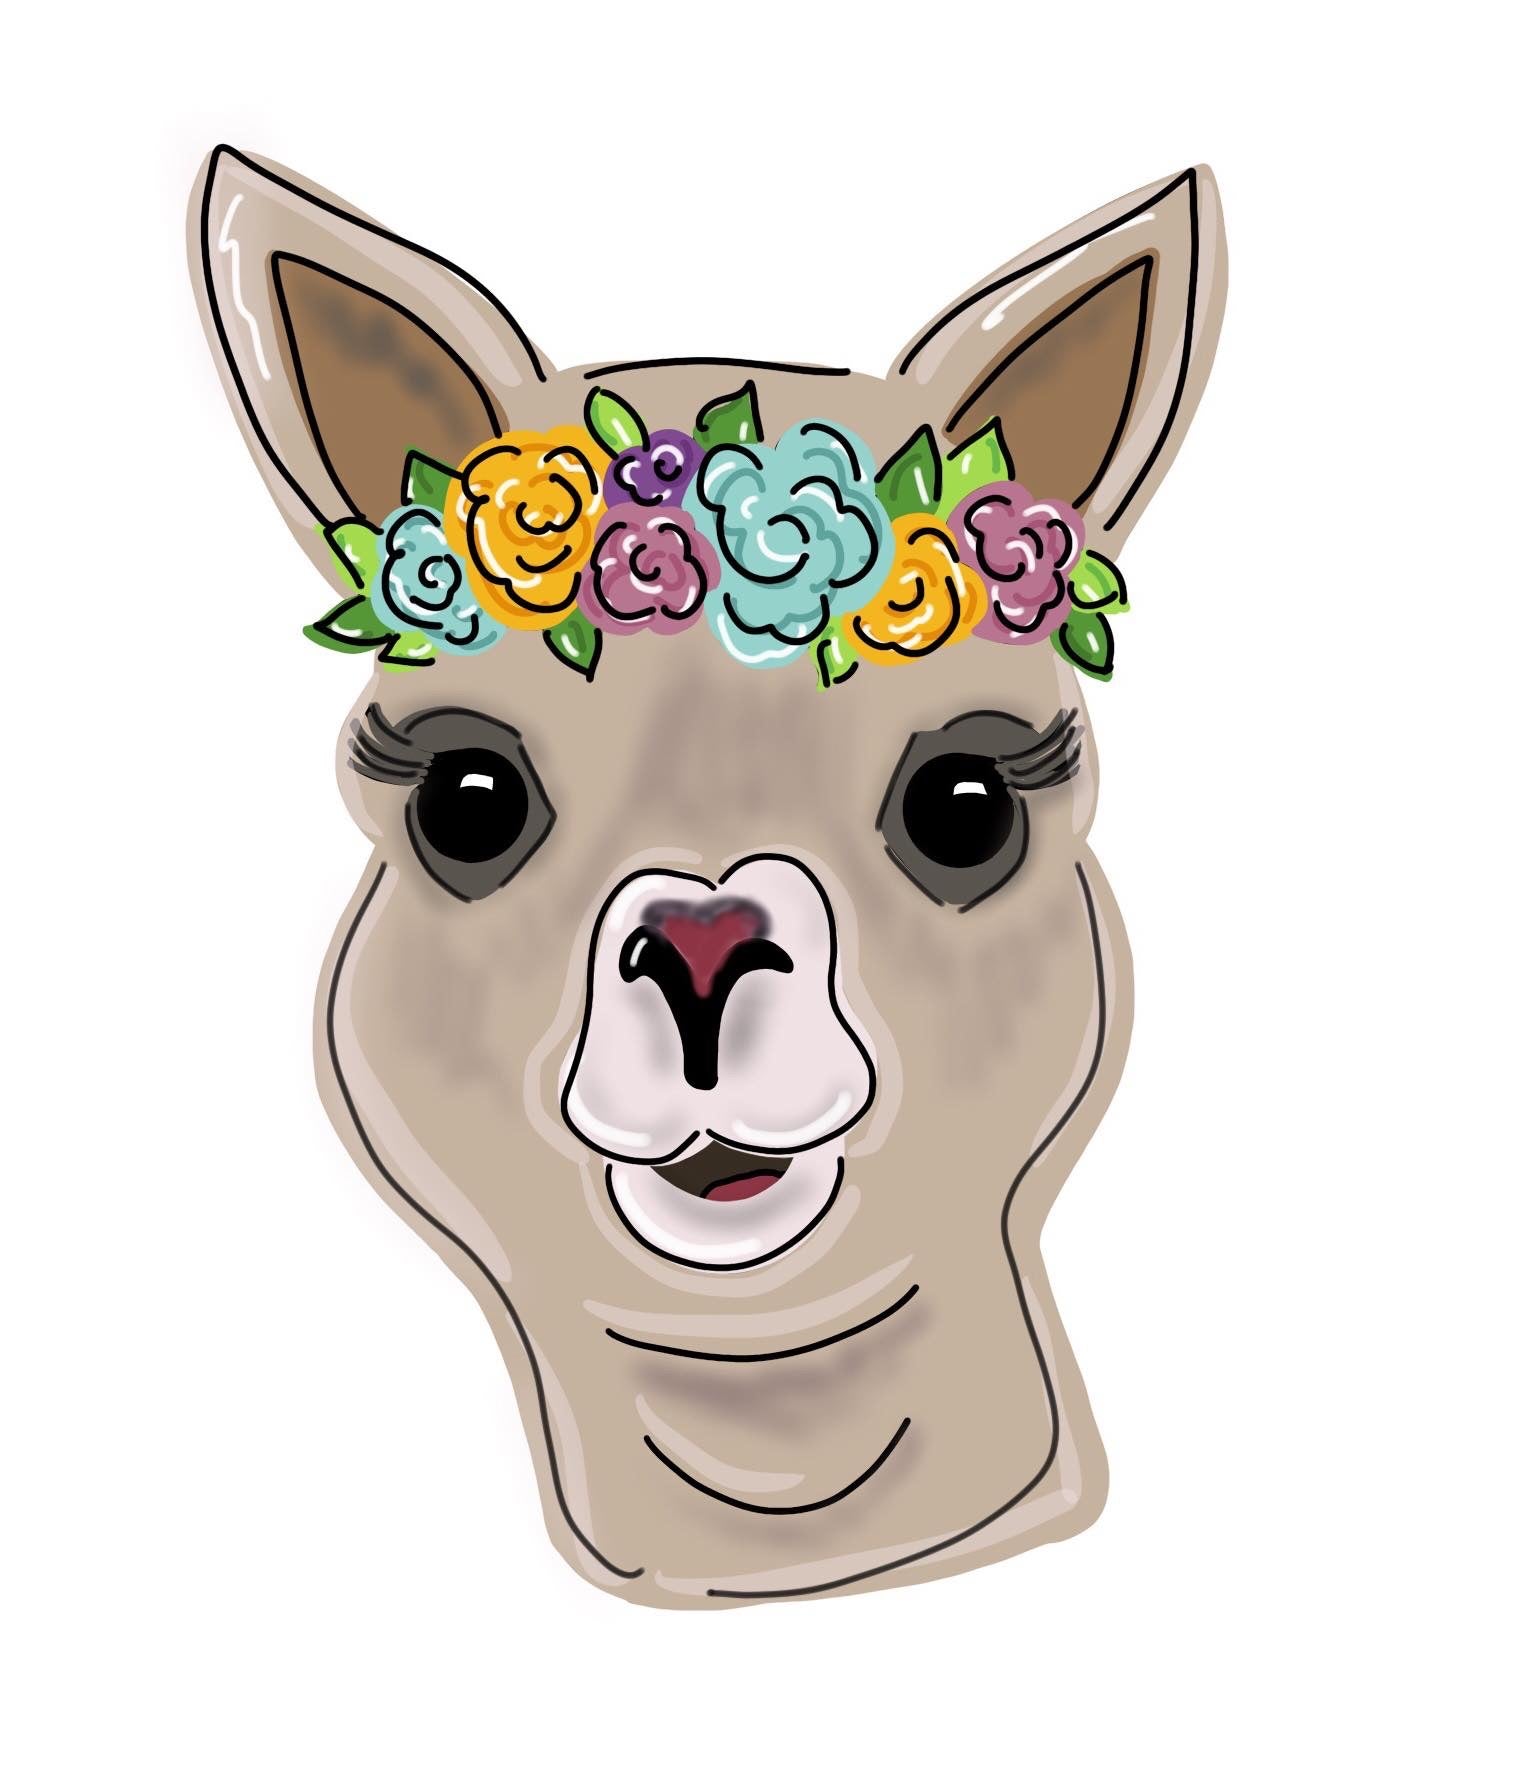 Floral Llama Template & Digital Cut File